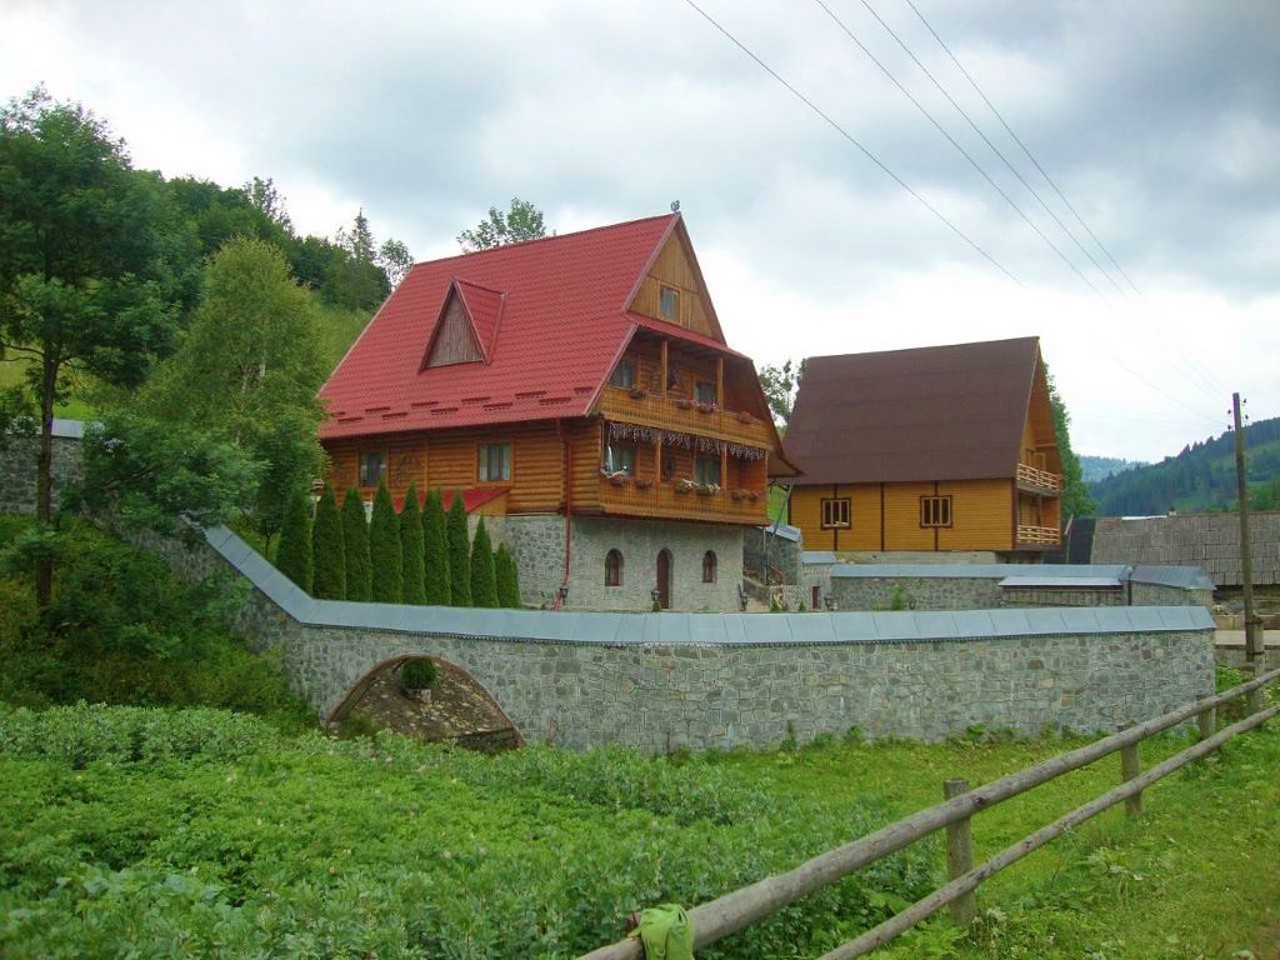 Oriavchyk village